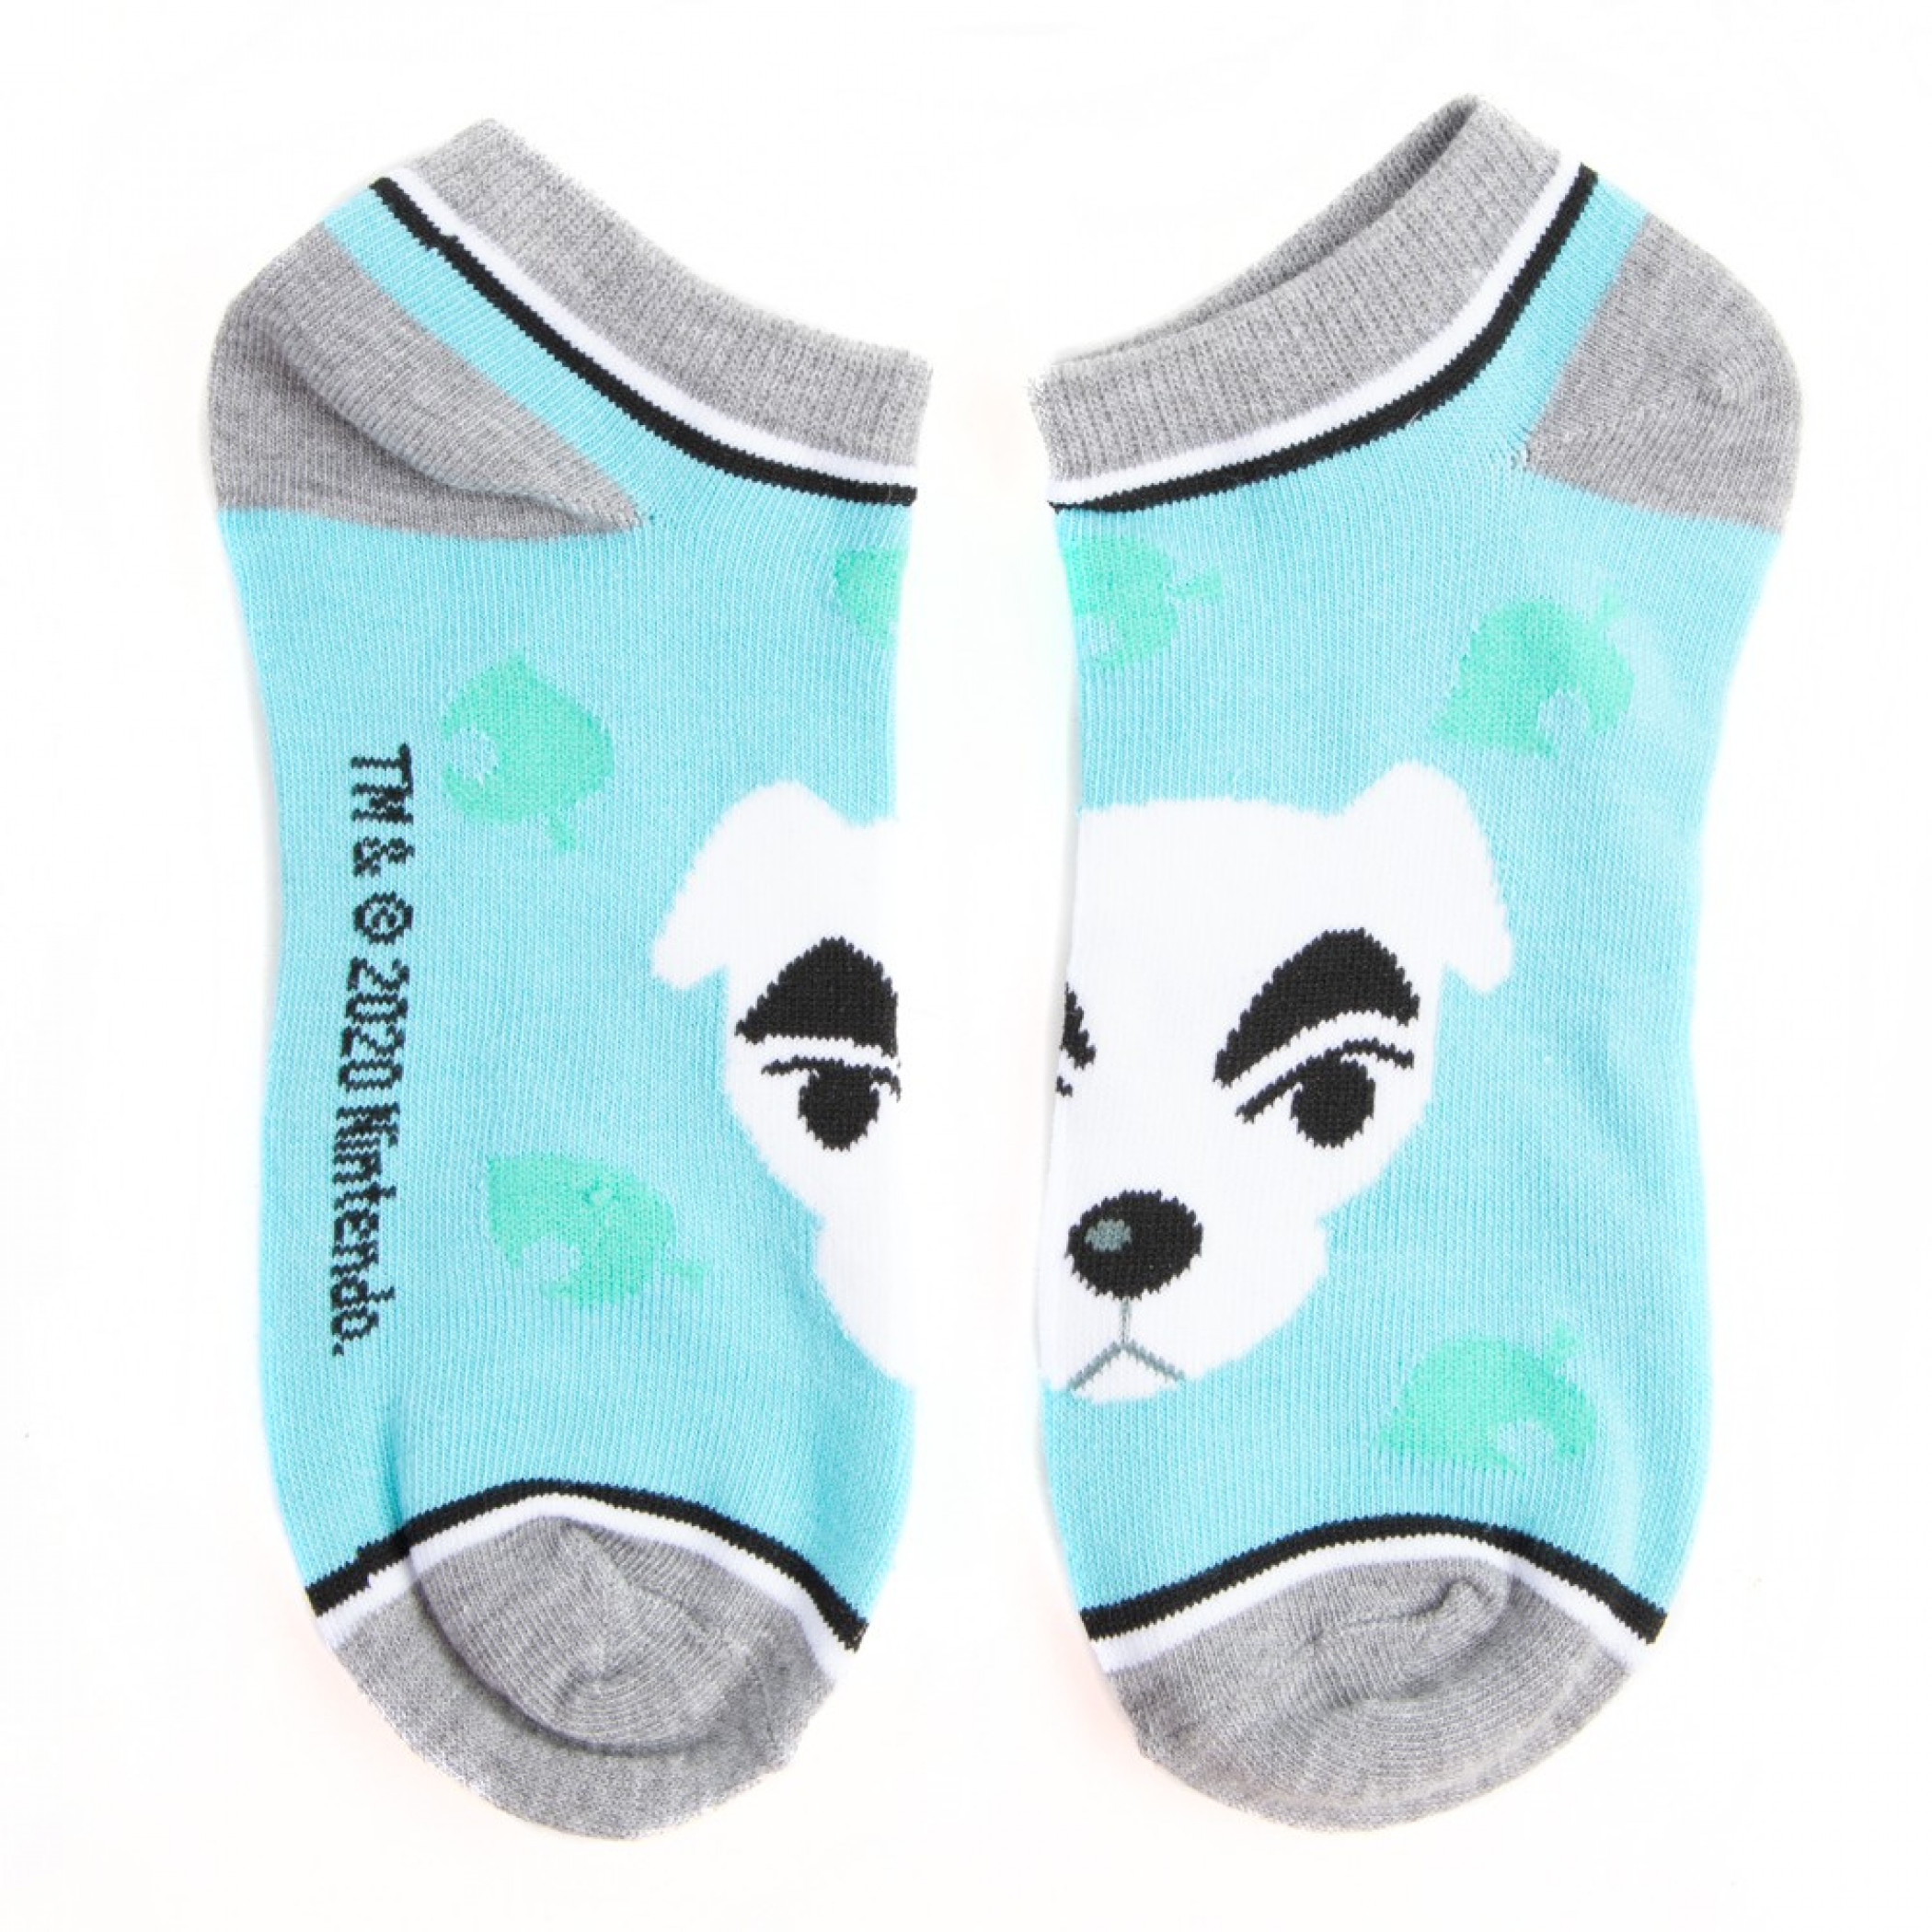 Animal Crossing 5-Pair Pack of Ankle Socks